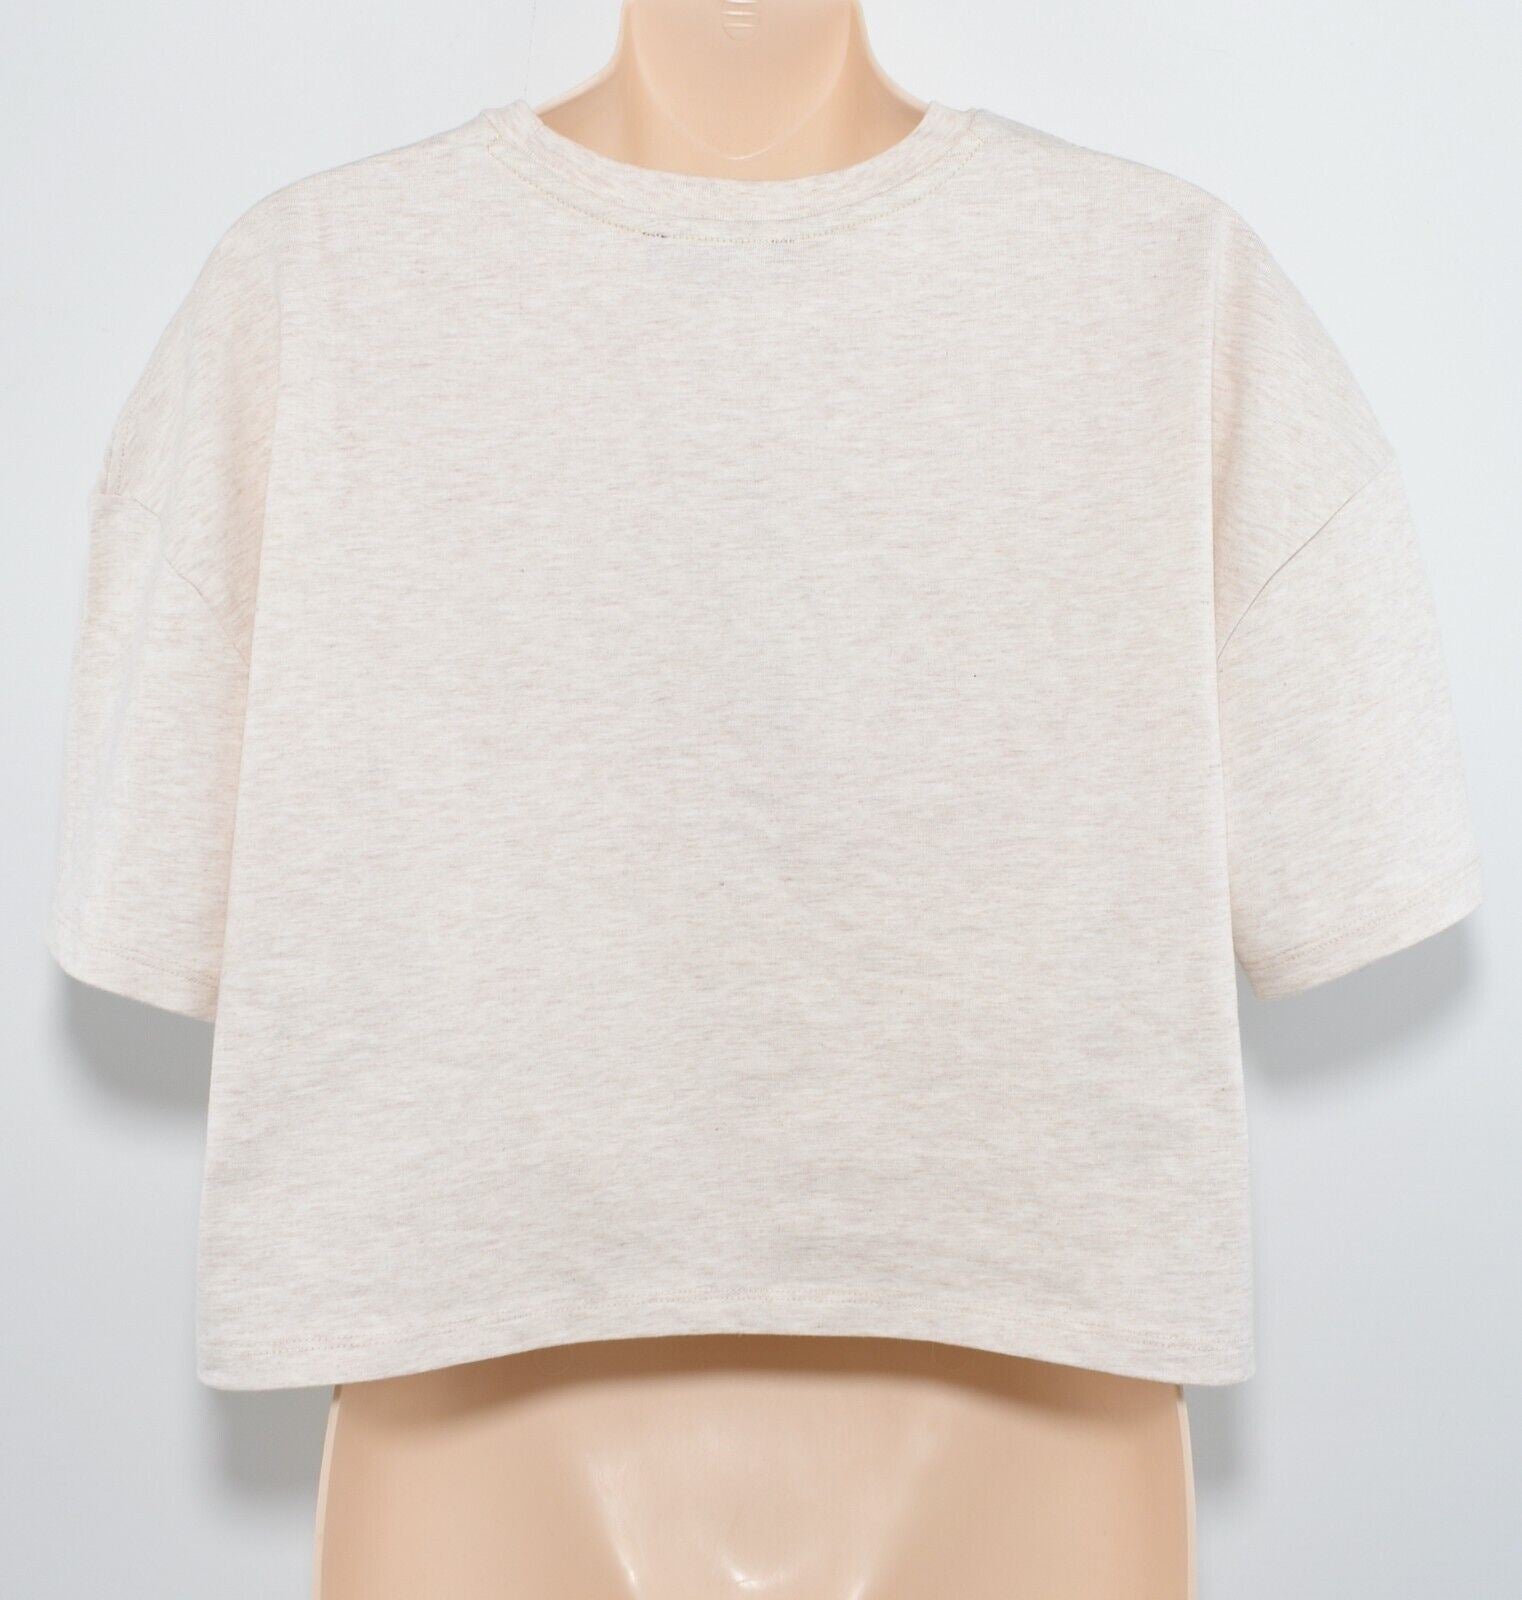 KANGOL Womens Cropped Boxy T-shirt Top, Oatmeal/Green Logo, size XS /UK 8